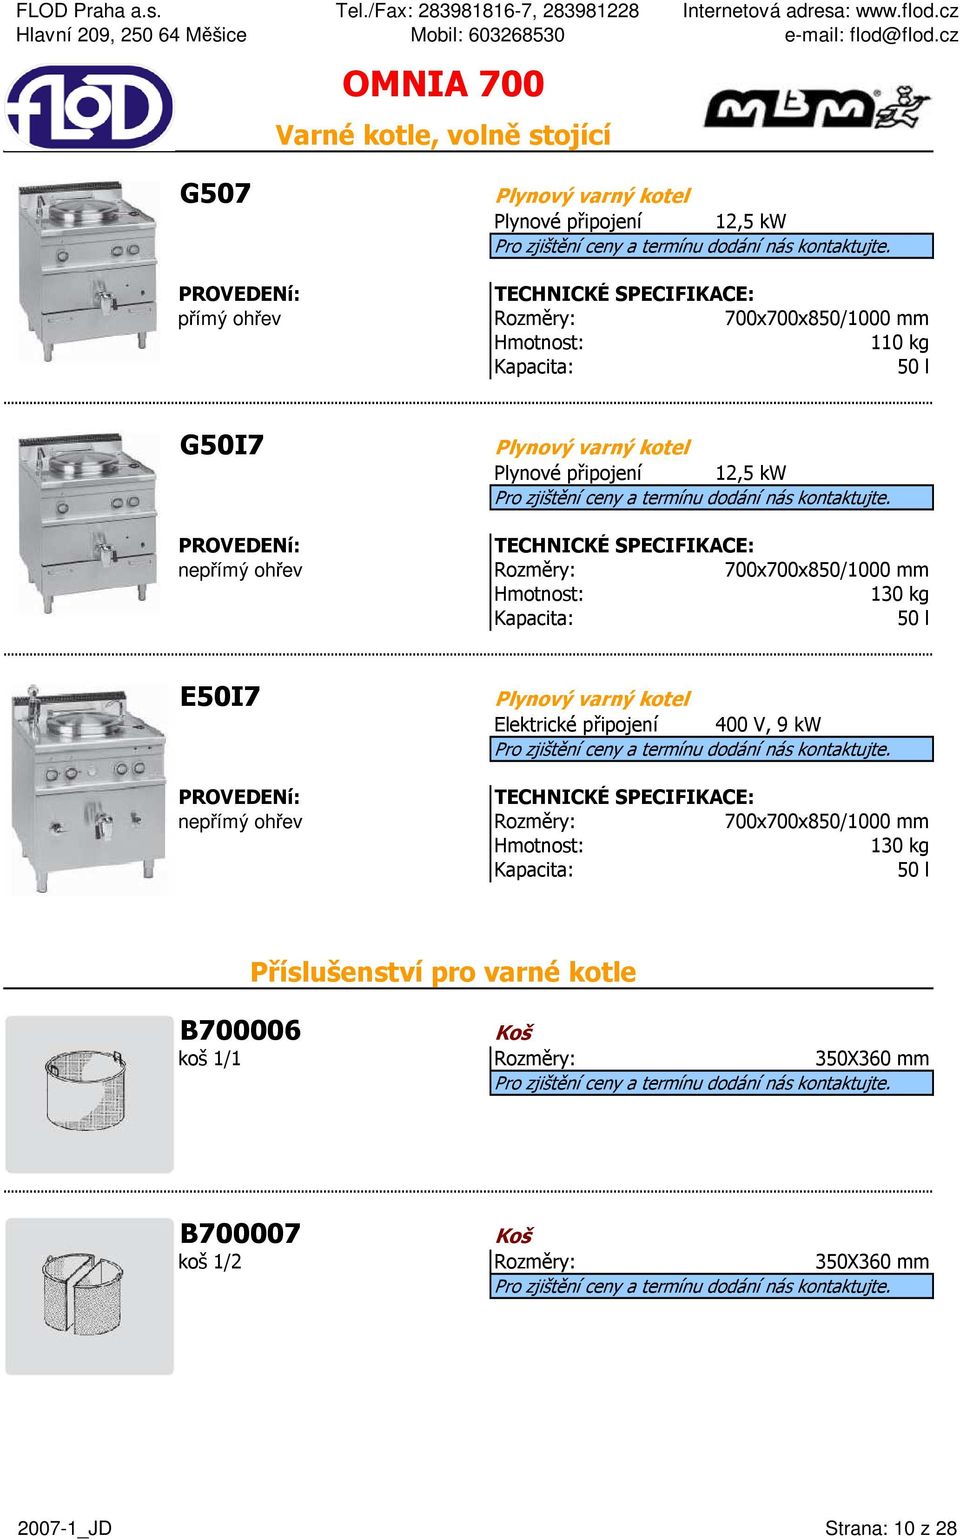 Kapacita: 50 l E50I7 Plynový varný kotel Elektrické připojení 400 V, 9 kw nepřímý ohřev 700x700x850/1000 mm 130 kg